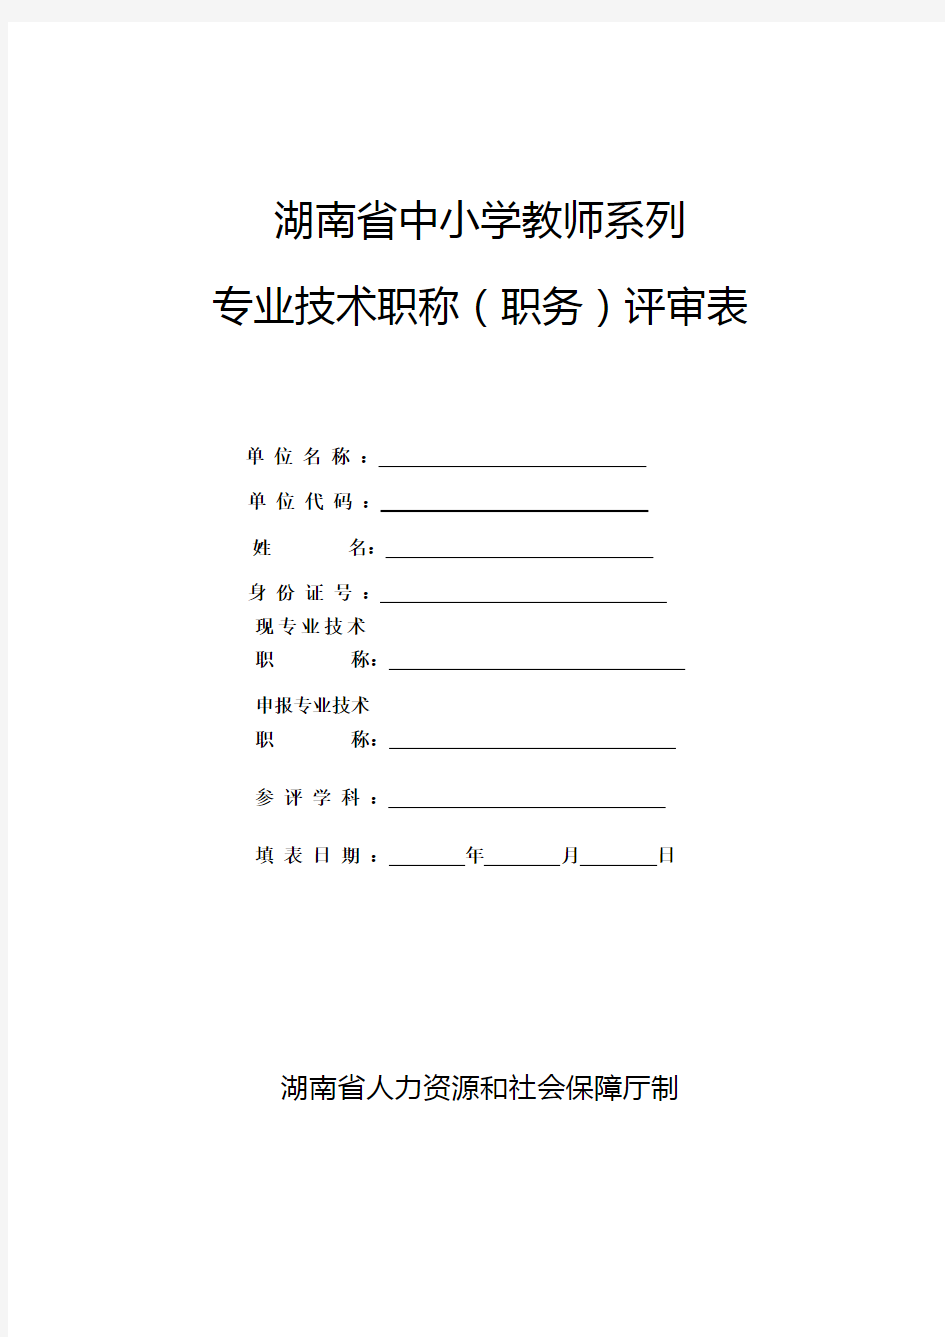 新张表湖南省中小学教师系列专业技术职称职务评审表